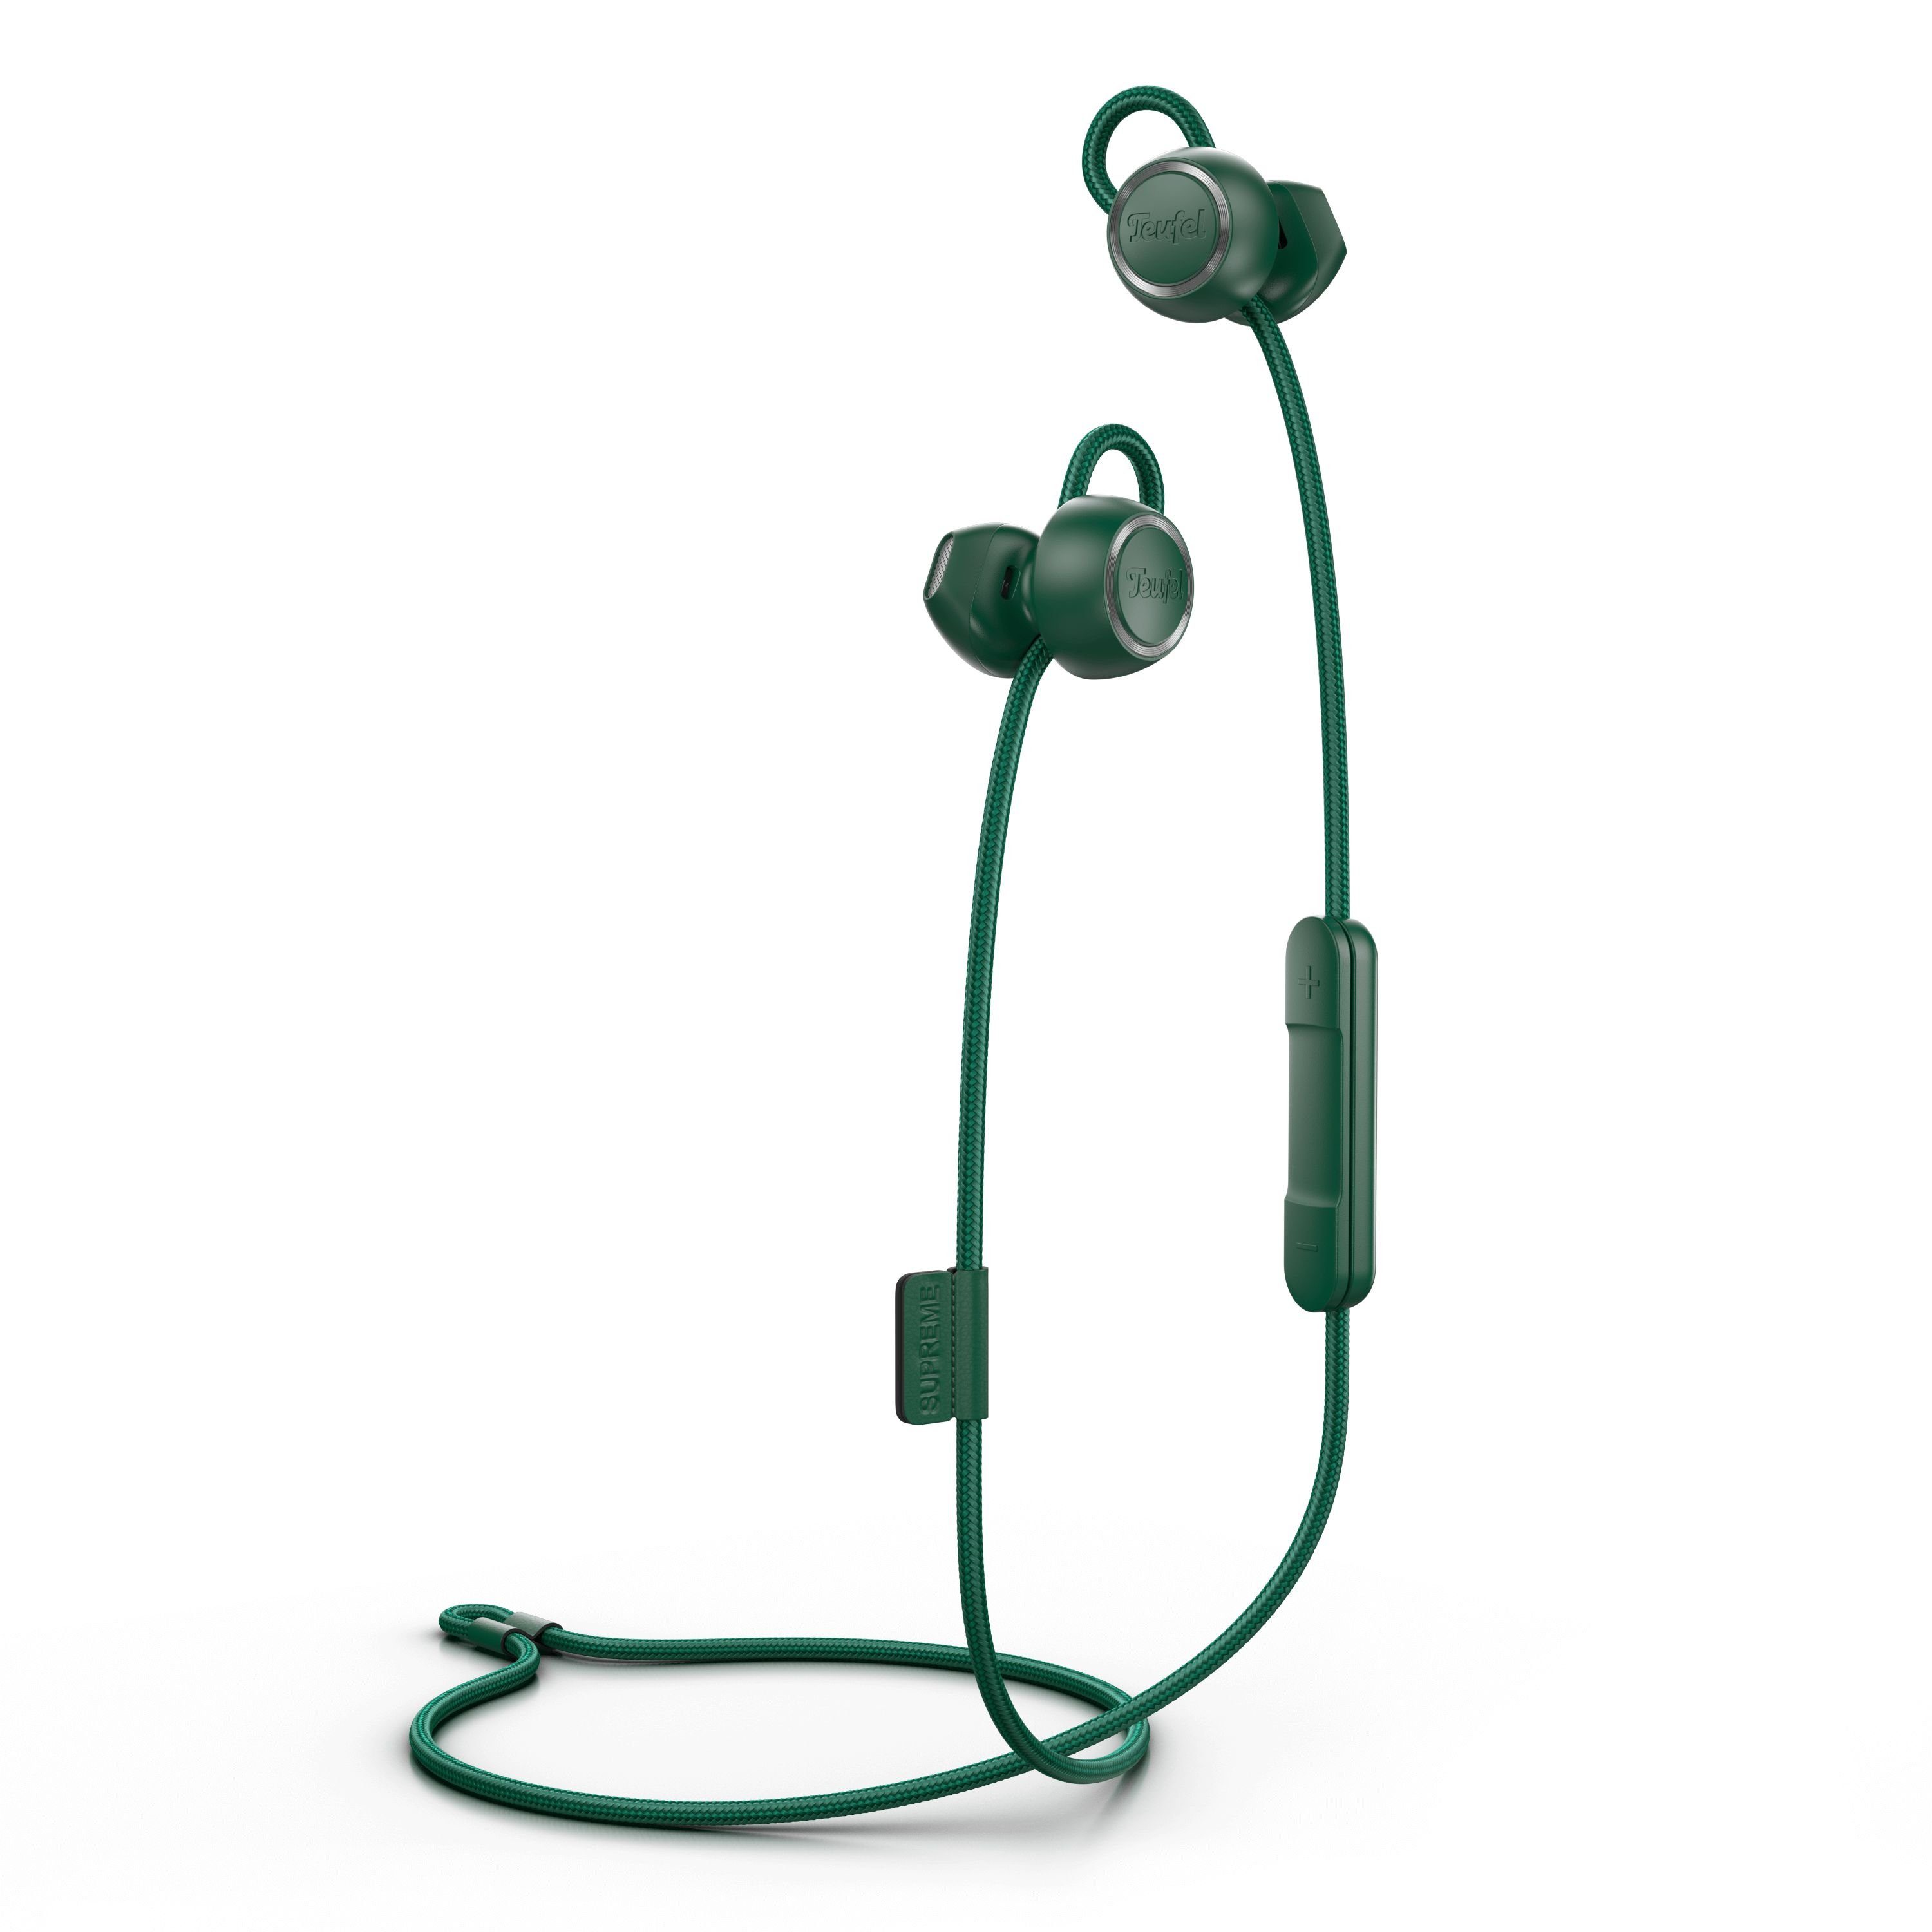 Teufel SUPREME IN Bluetooth-Kopfhörer (Freisprecheinrichtung mit Qualcomm, EQ, ShareMe- und weitere Einstellungen über die Teufel Headphones App möglich) Ivy Green